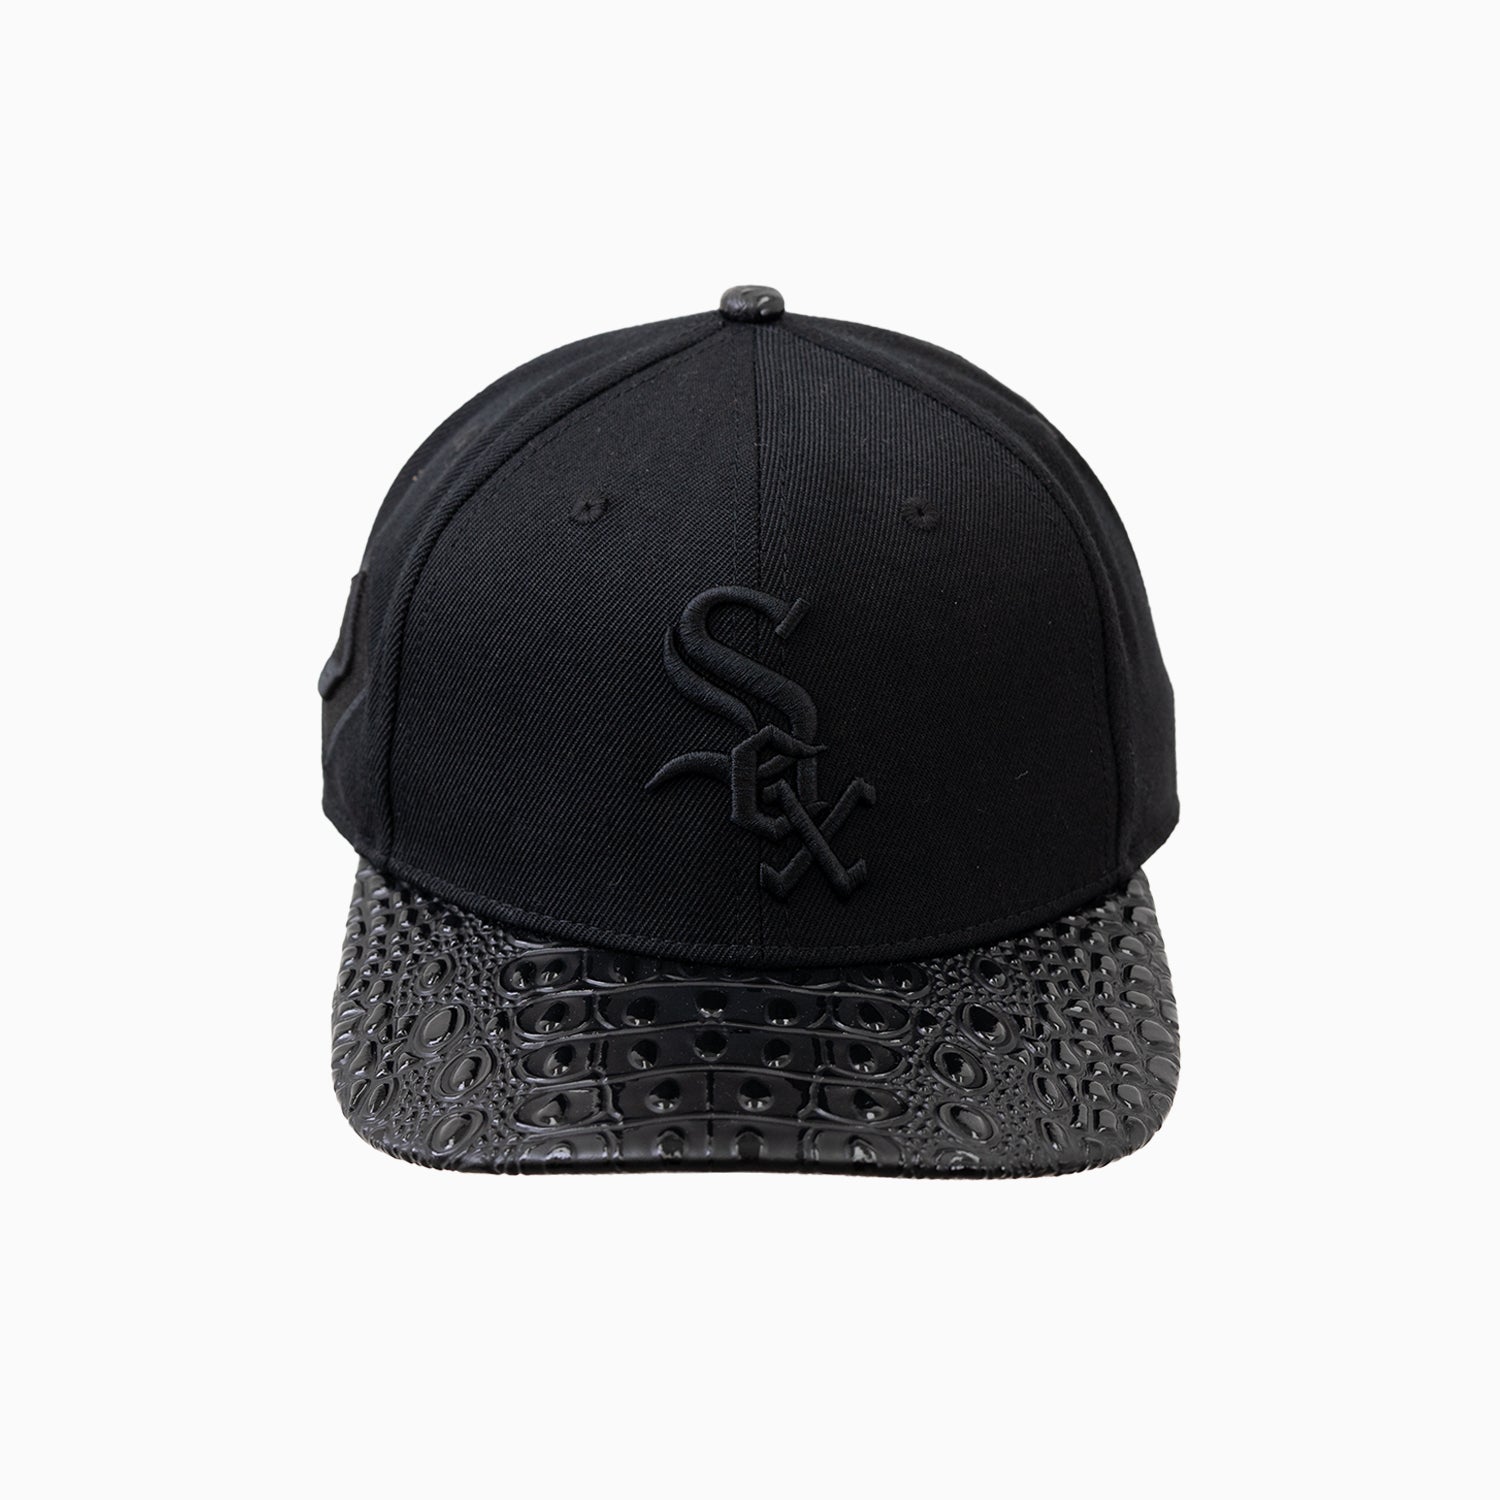 pro-standard-chicago-white-sox-mlb-leather-visor-hat-lcw736178-3bk